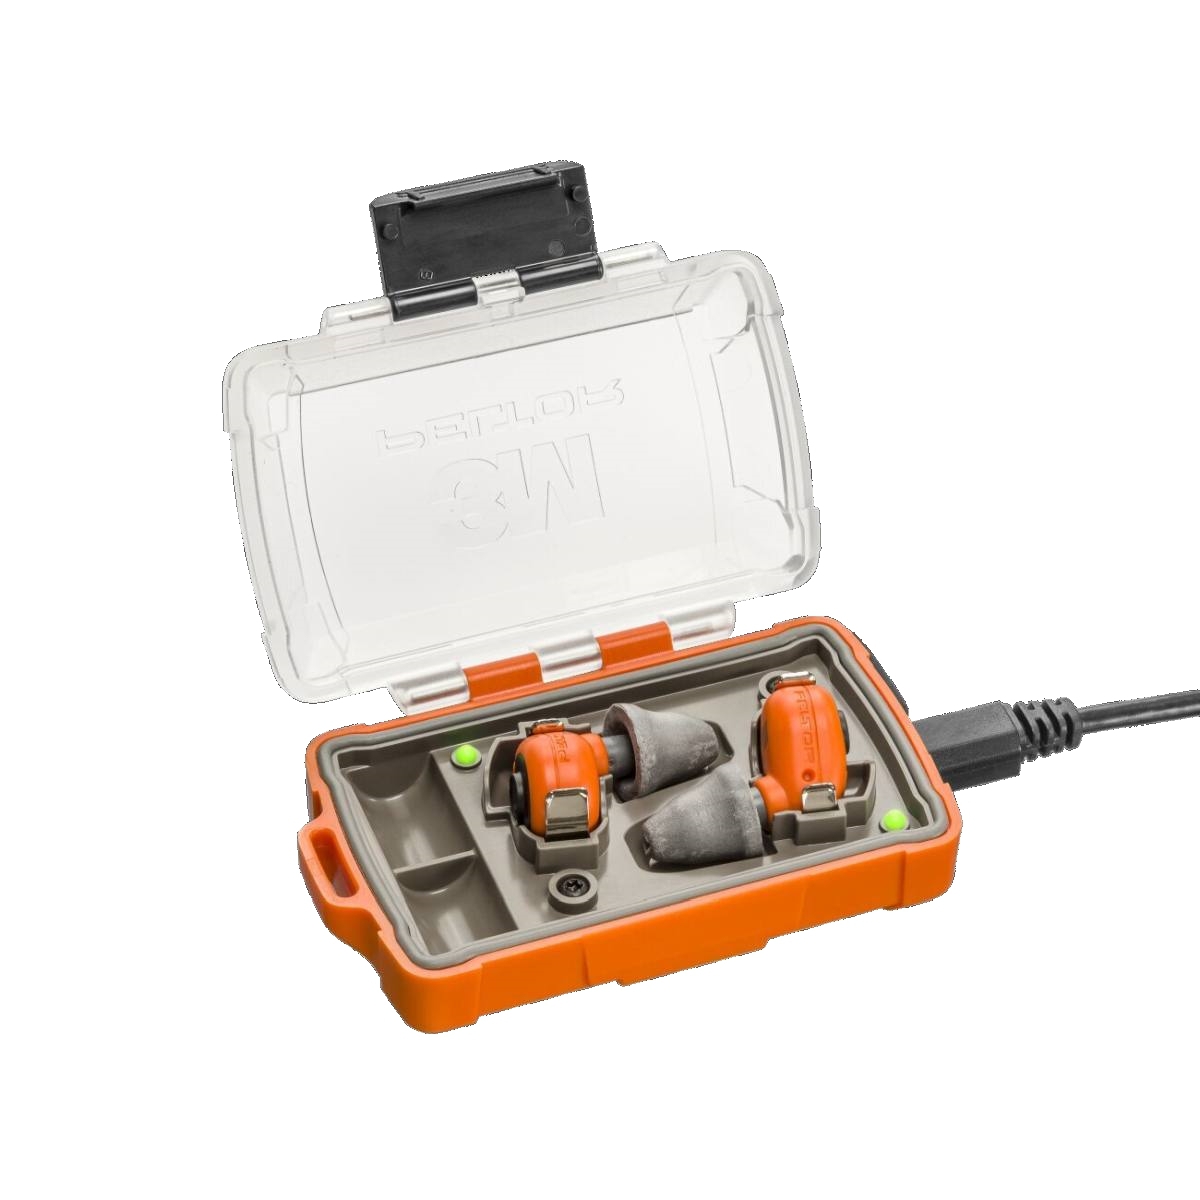 3M PELTOR EEP-100 EU Tapones electrónicos naranja, juego: los tapones y la estación de carga (con tapa cerrada y puertos USB) tienen clasificación IP-54 y son resistentes al agua